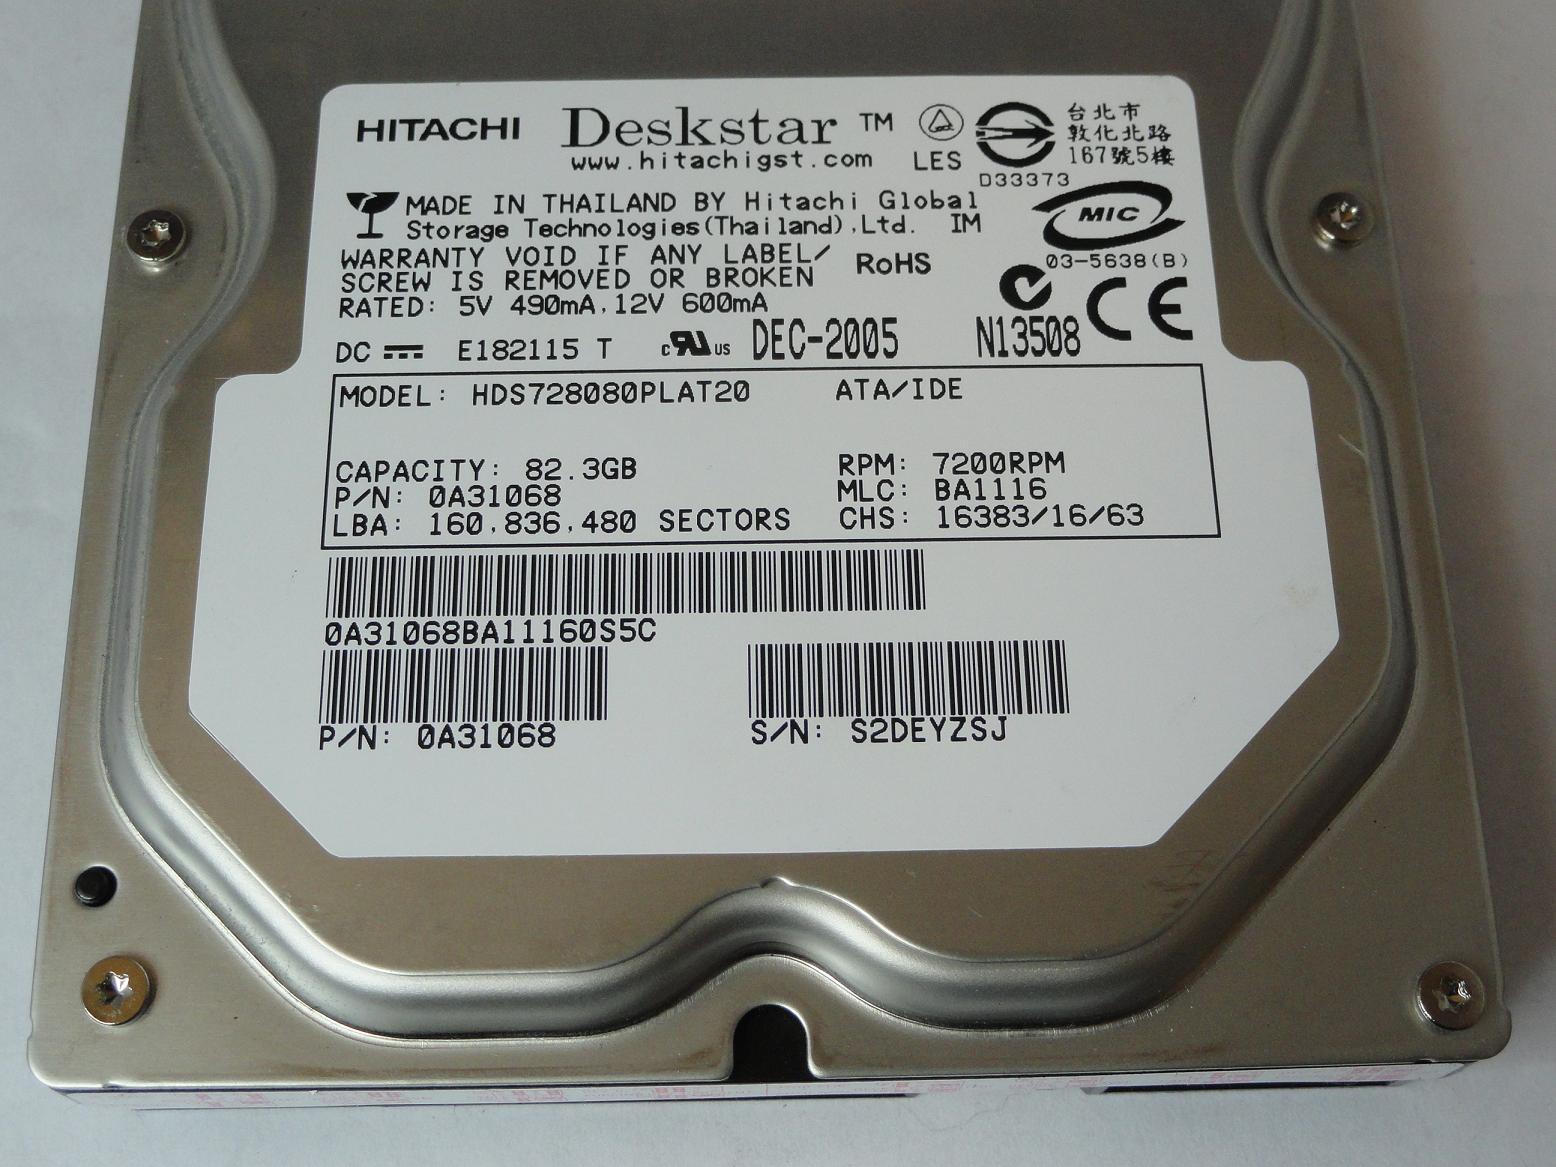 PR16881_0A31068_Hitachi 80GB IDE 7200rpm 3.5in HDD - Image3